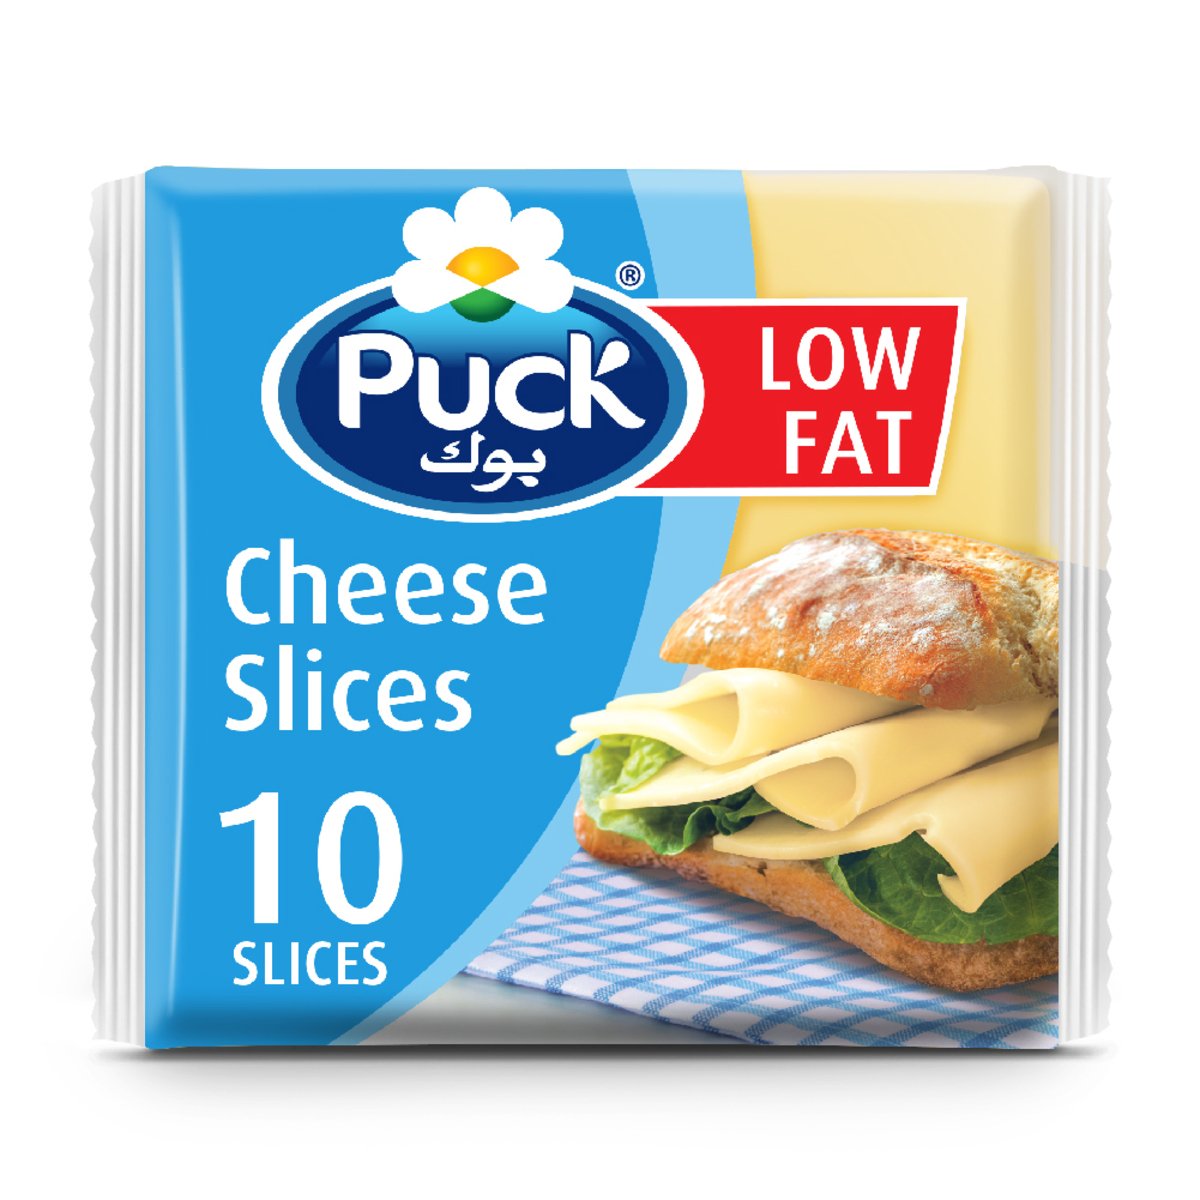 اشتري قم بشراء بوك جبنة 10 شرائح قليلة الدسم 200 جم Online at Best Price من الموقع - من لولو هايبر ماركت Sliced Cheese في السعودية